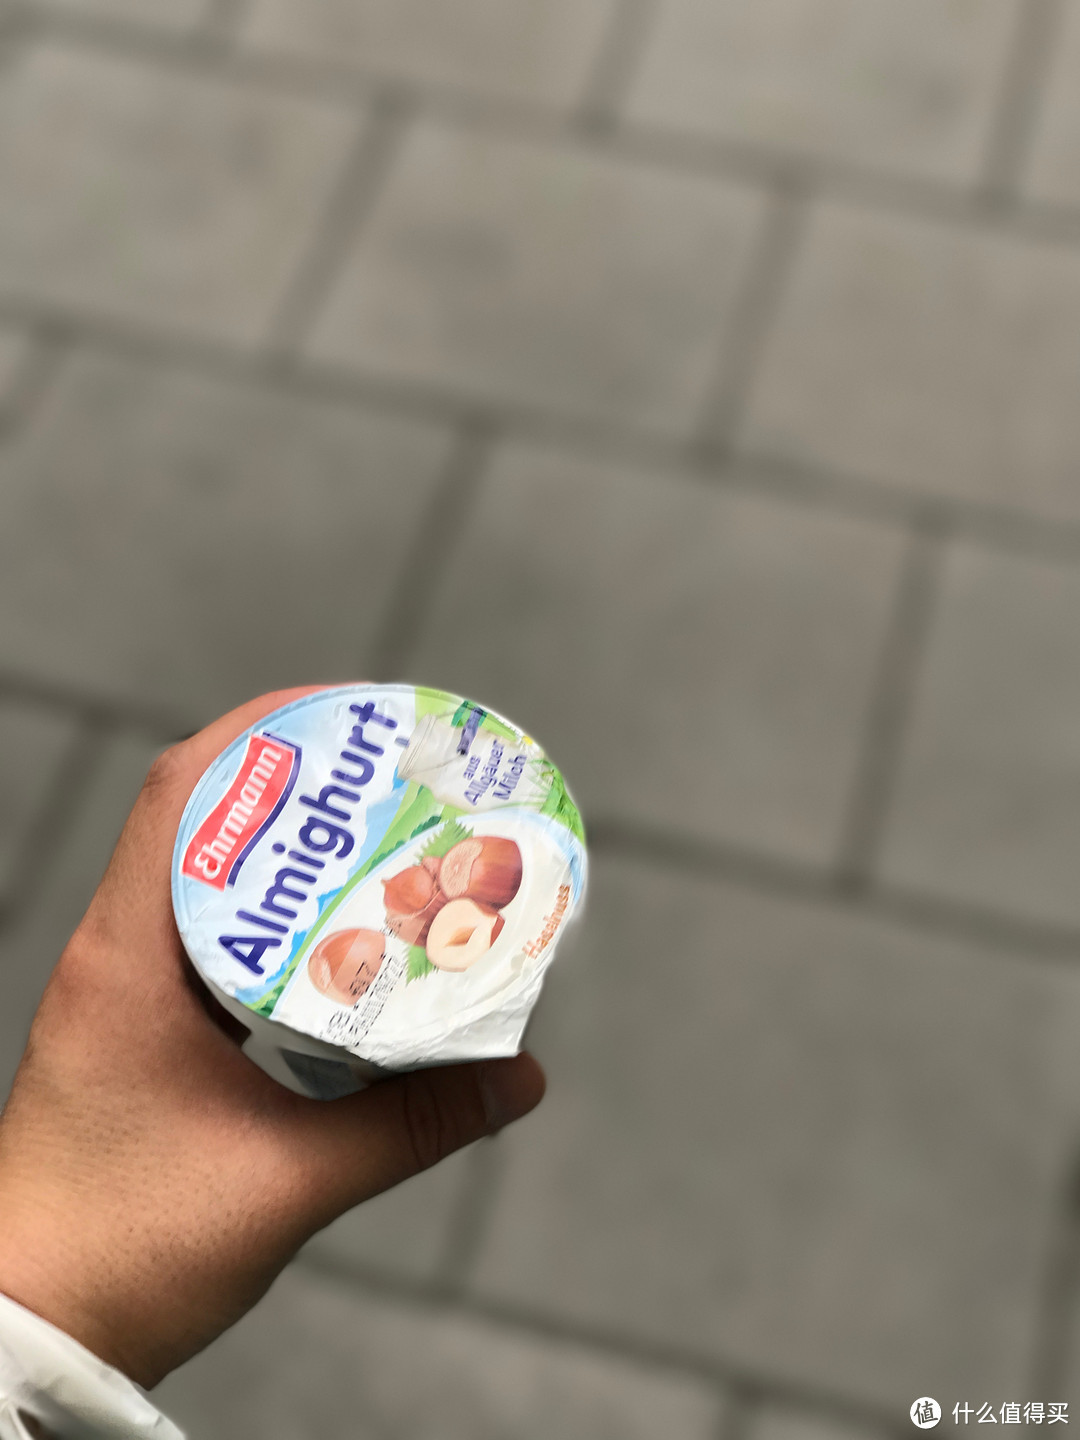 这个酸奶好好喝呀